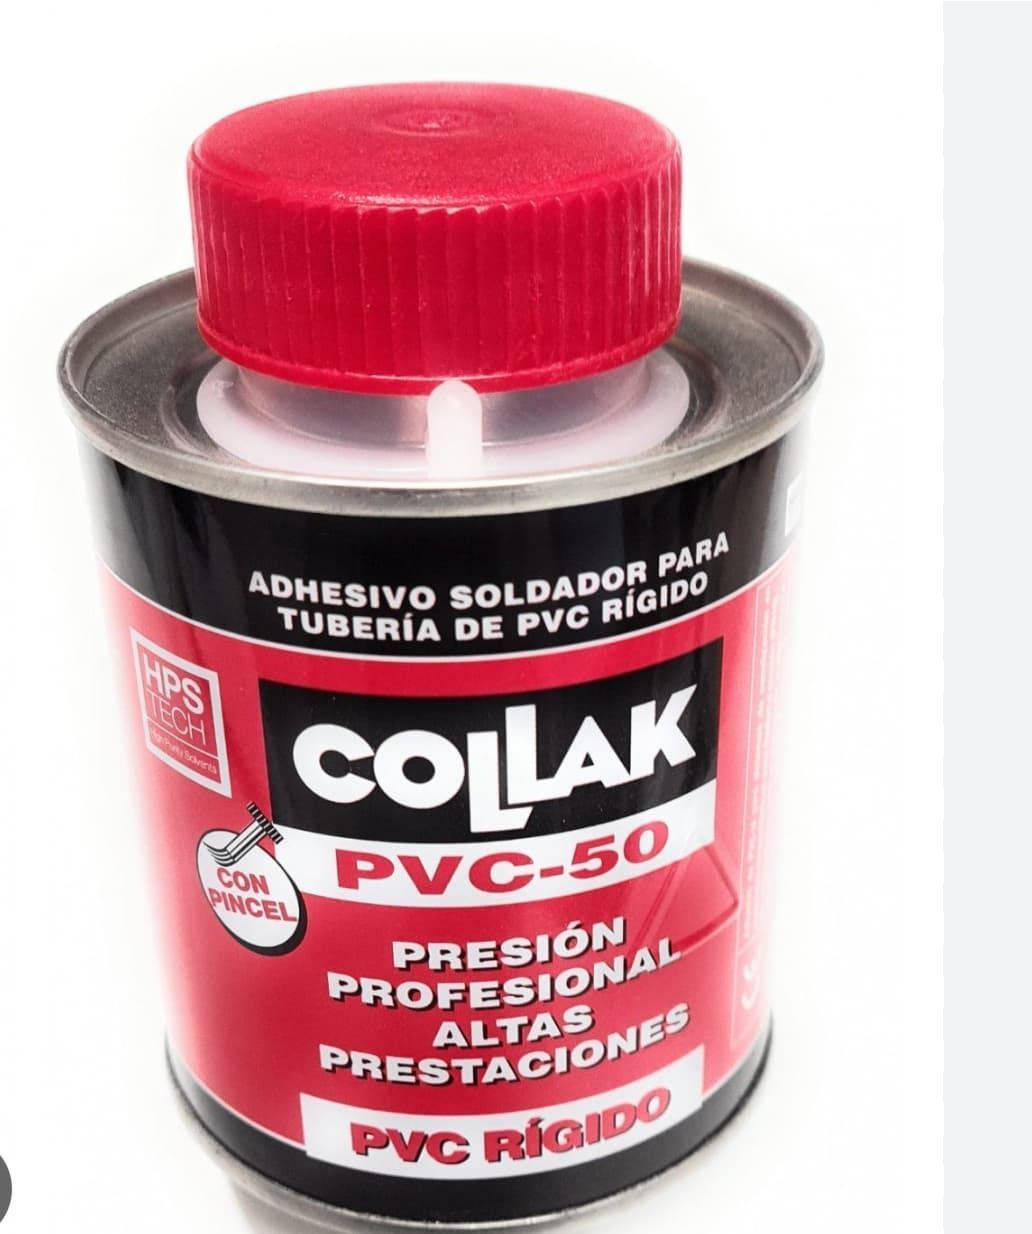 COLLAK PVC-50 - ADHESIVO SOLDADOR PVC 250ml - Imagen 1